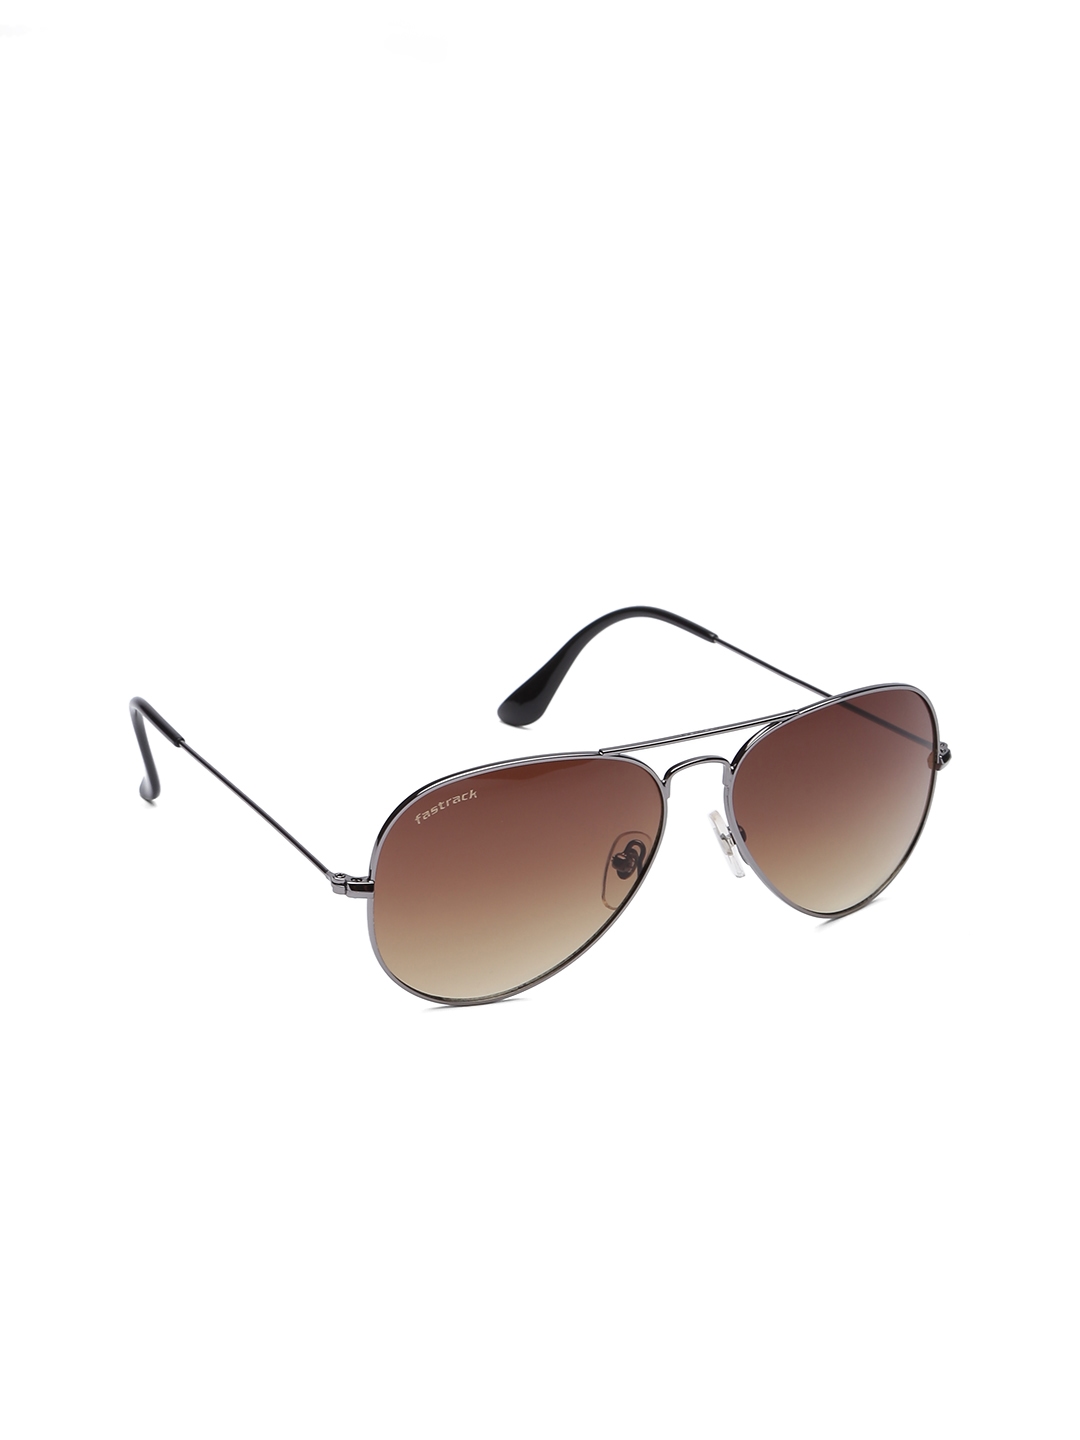 Buy Online Black Wayfarer Rimmed Sunglasses From Fastrack - Pc001Bk20 | Fastrack  Eyewear